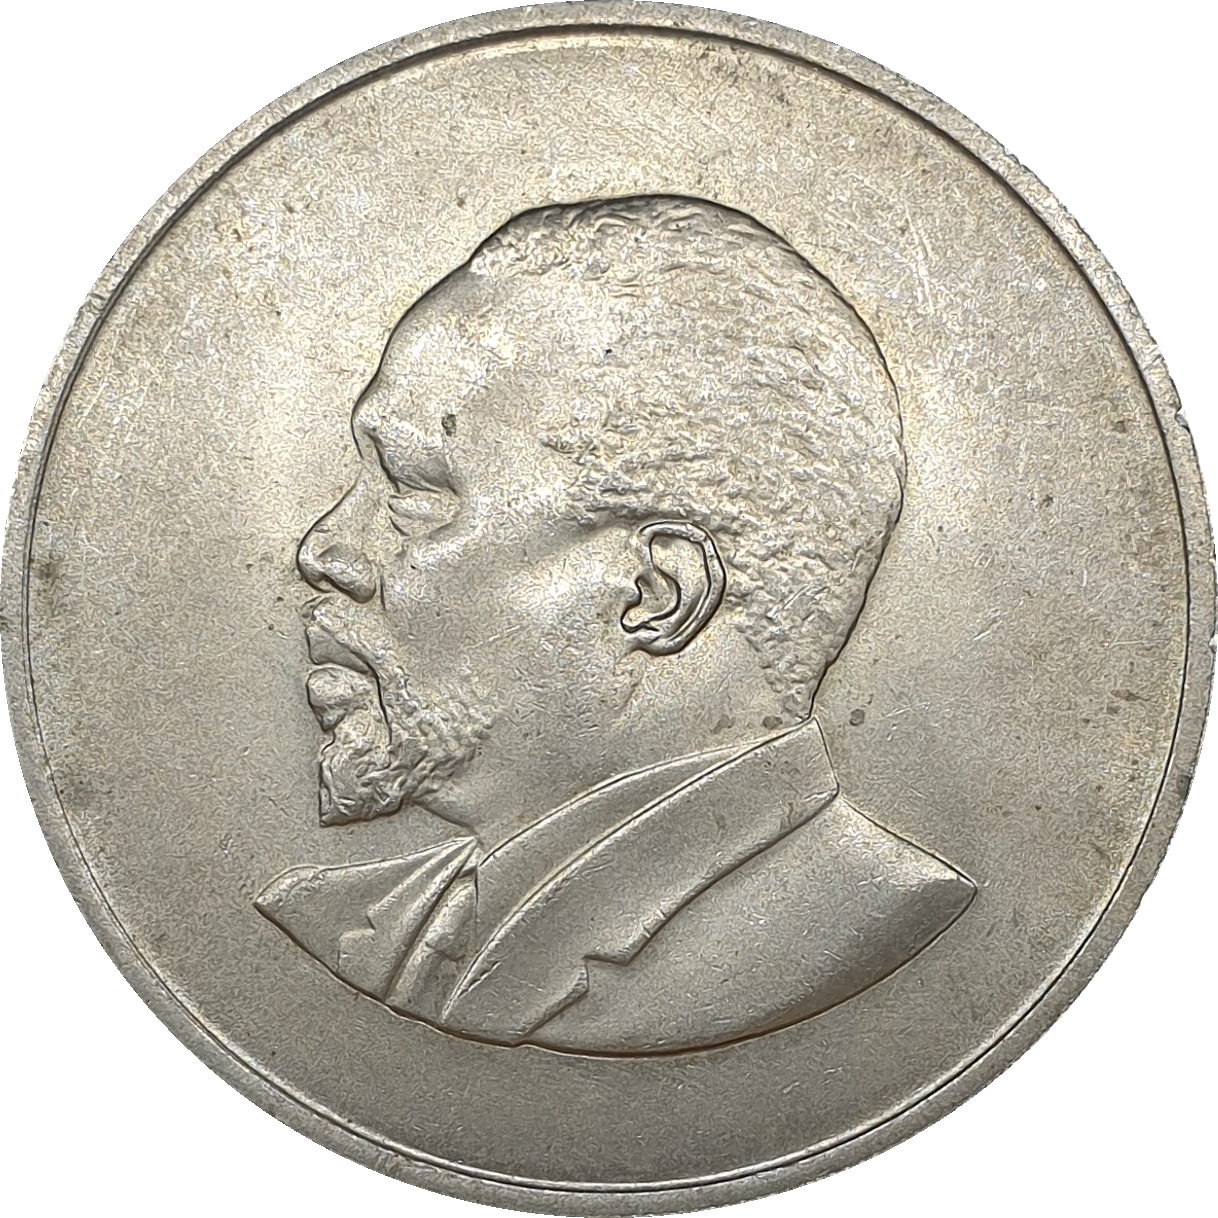 2 shillings - Mzee Jomo Kenyatta - Sans légende